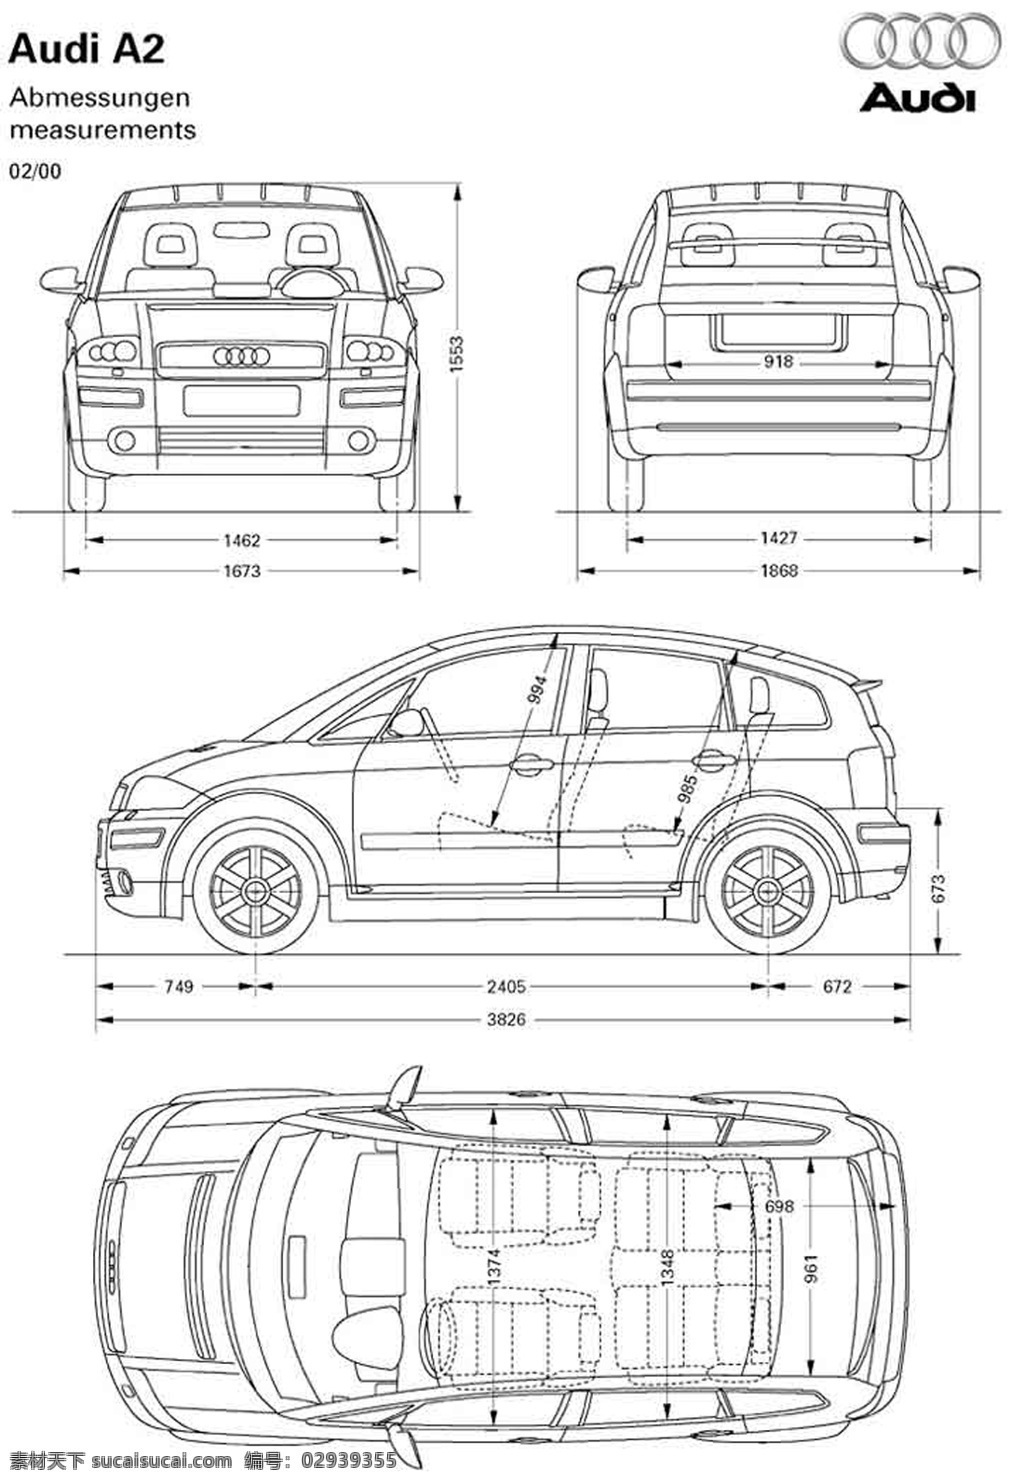 汽车三视图 3dsmax maya 三维建模 软件 汽车建模 精品图纸 交通工具 现代科技 贴图